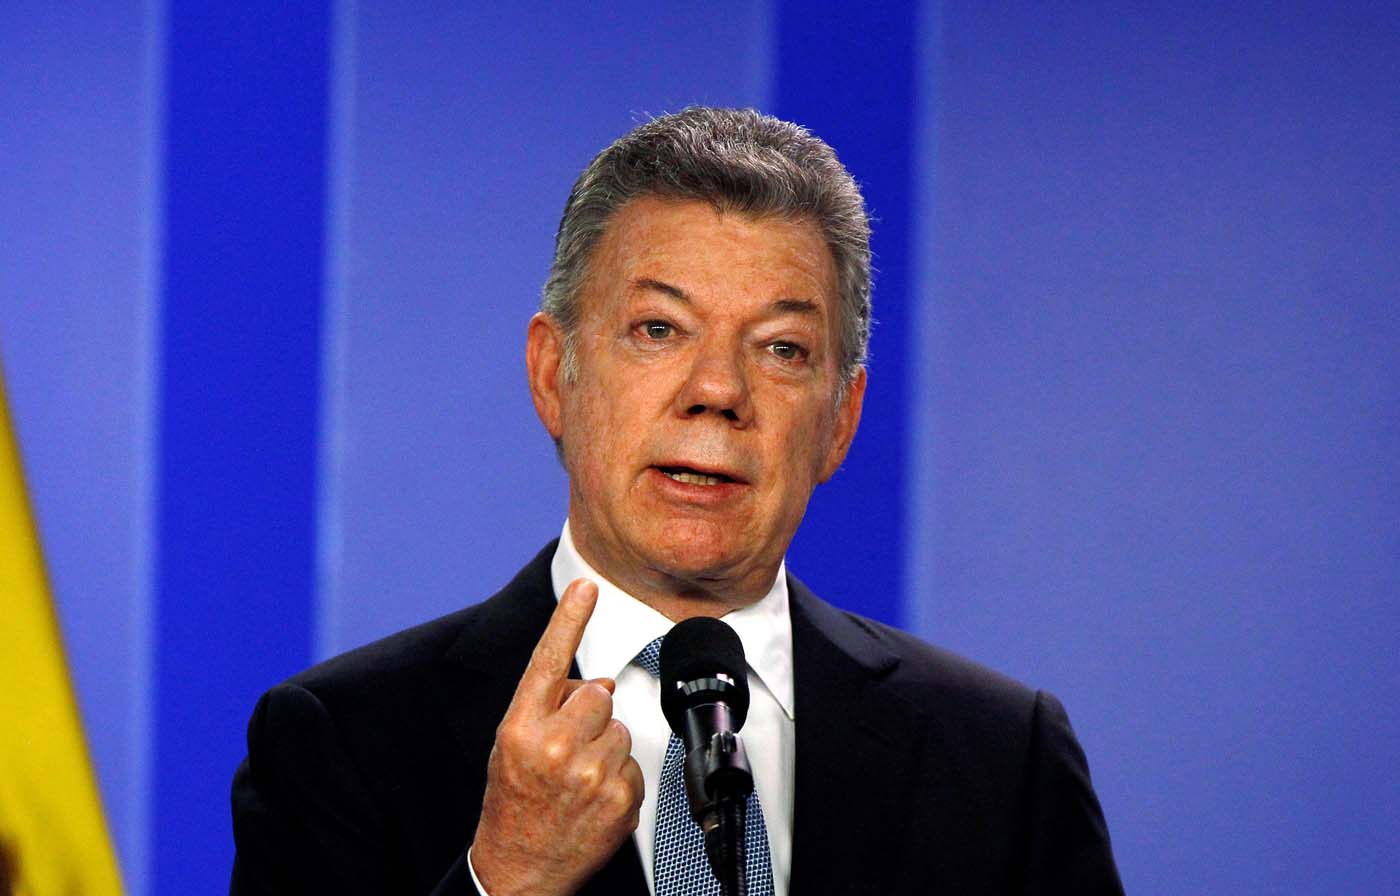 Santos convocará sesiones extra del Congreso si no se aprueba Justicia de Paz